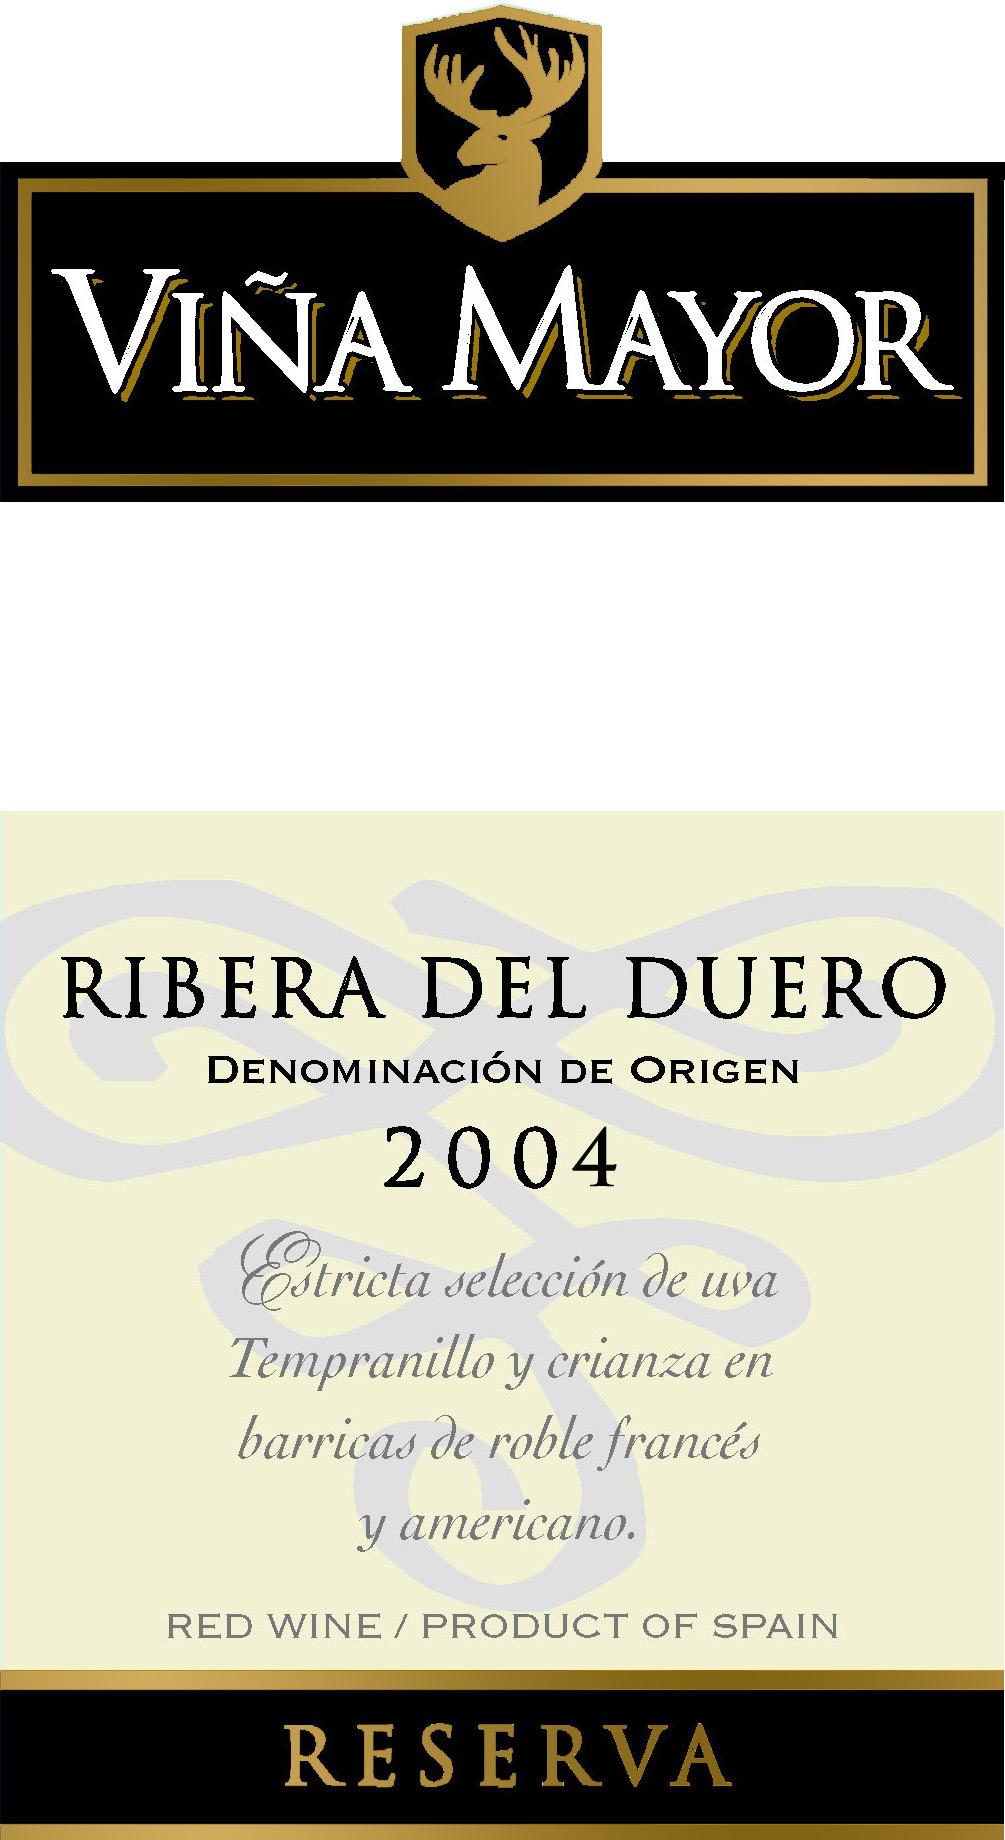 Ribera del Duero Viña Mayor Reserva 2004 de Hijos de Antonio Barceló